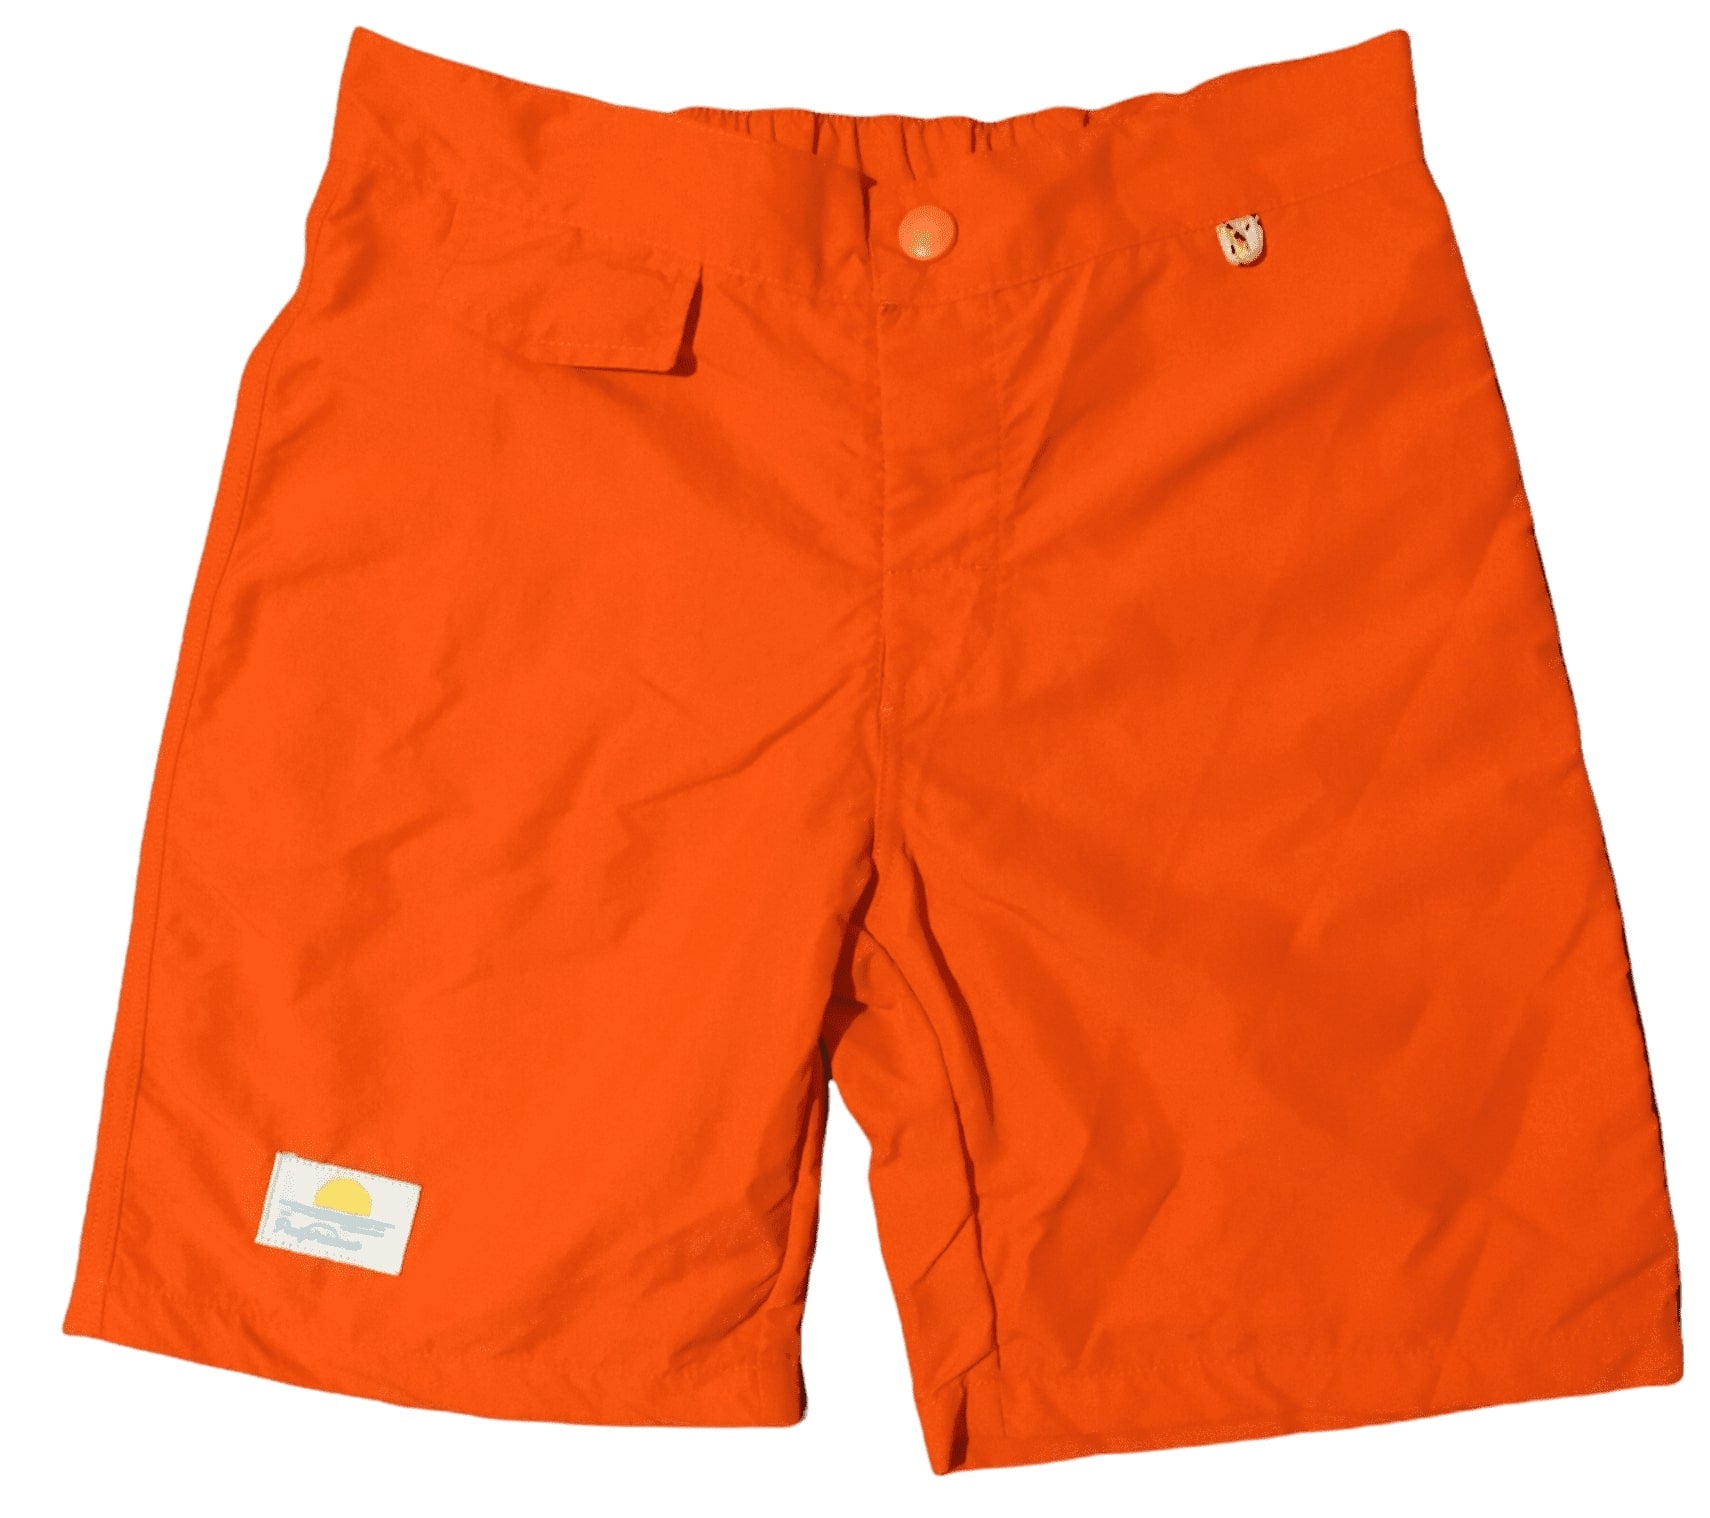 Charlie Surfer Short - orange